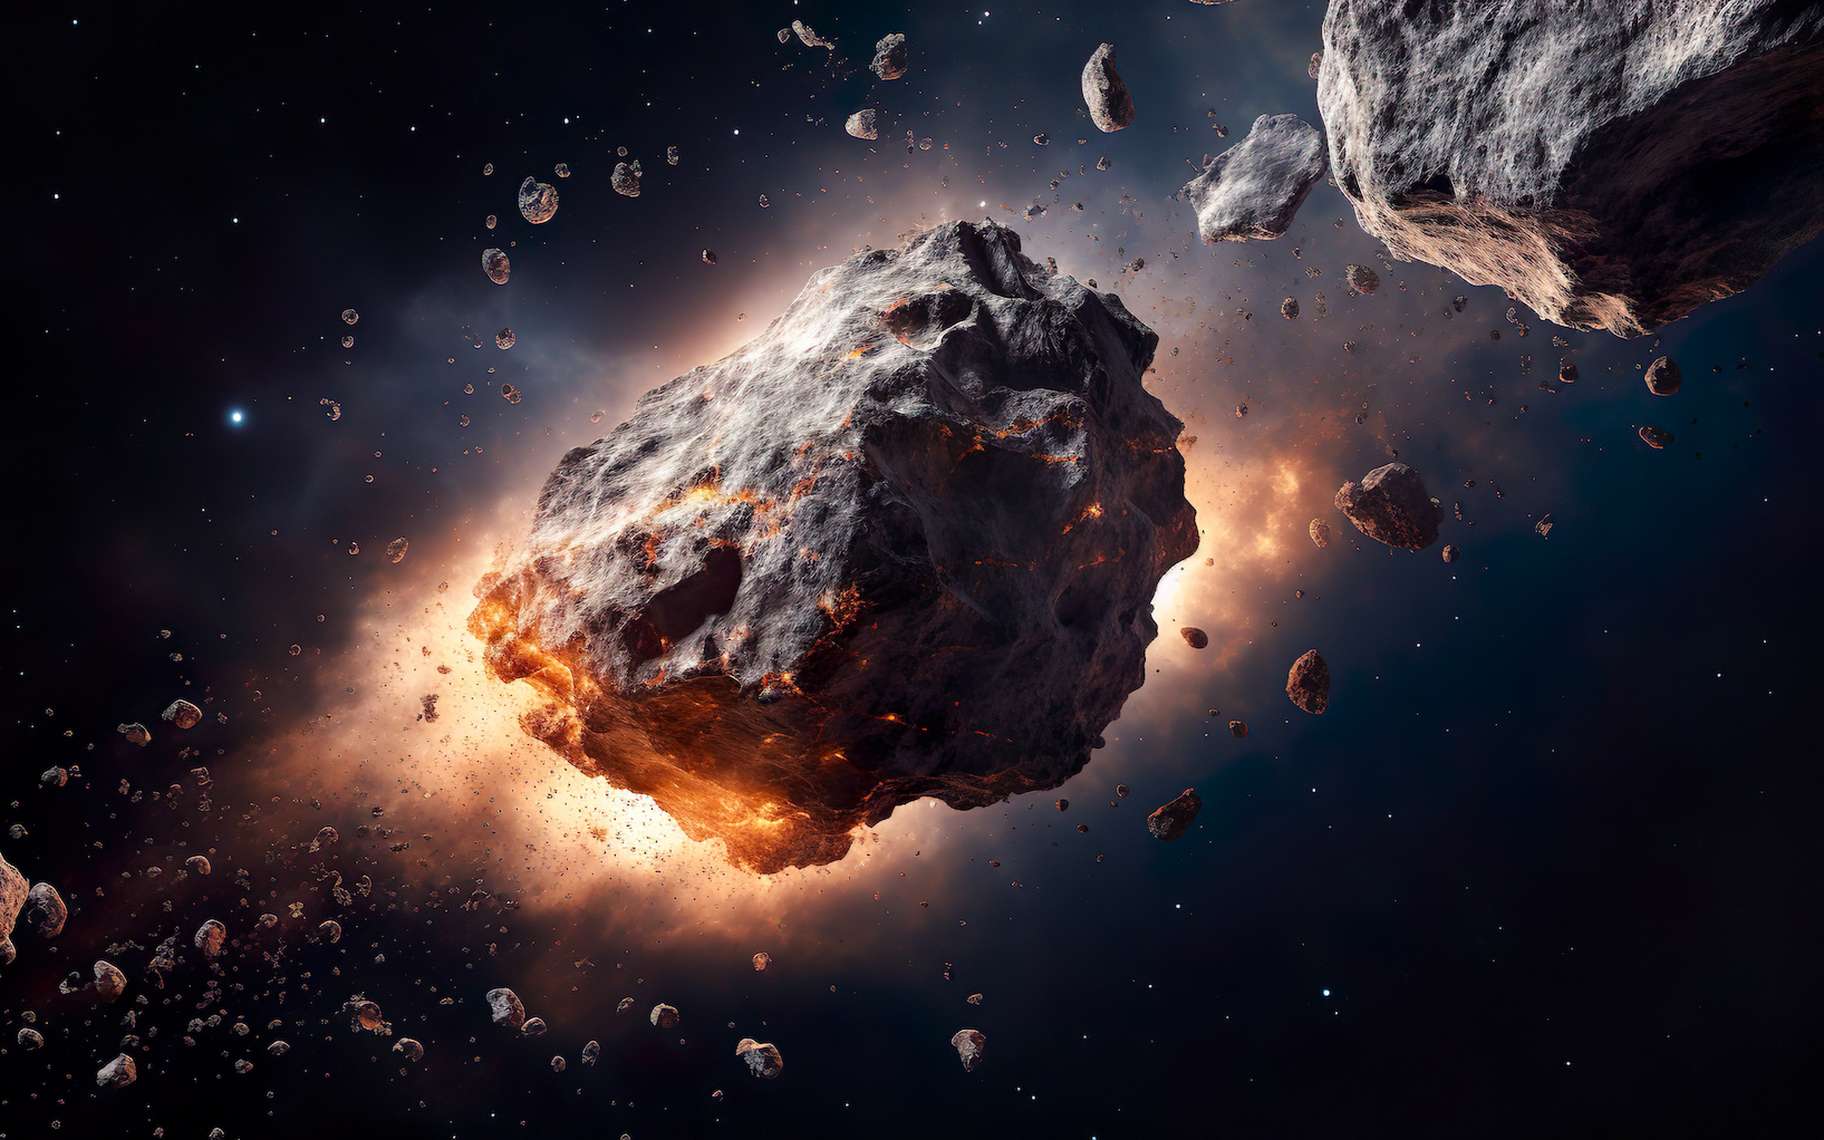 Une étude révèle les secrets de cet étrange astéroïde double survolé par la Nasa